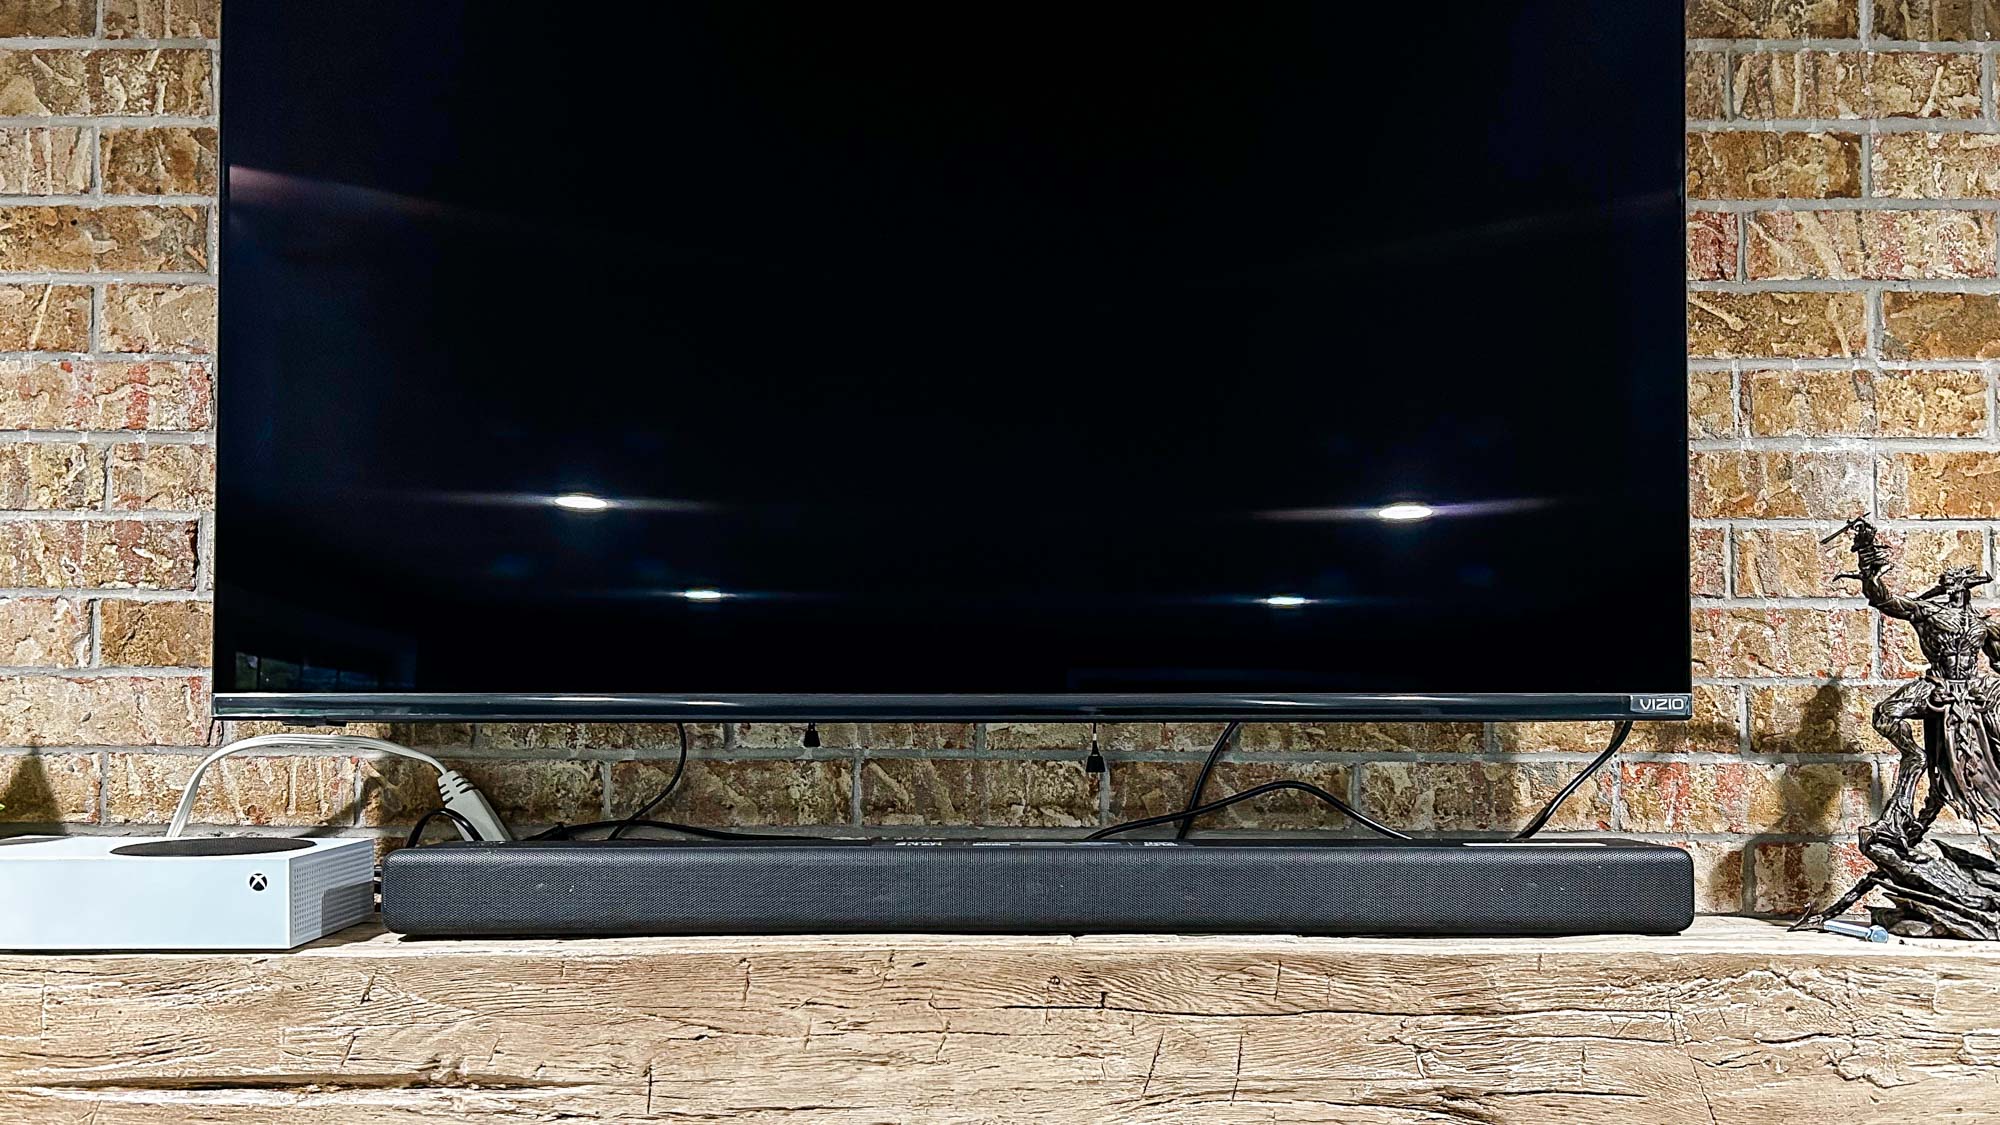 Barra de sonido Sony HT-A3000 montada debajo del televisor